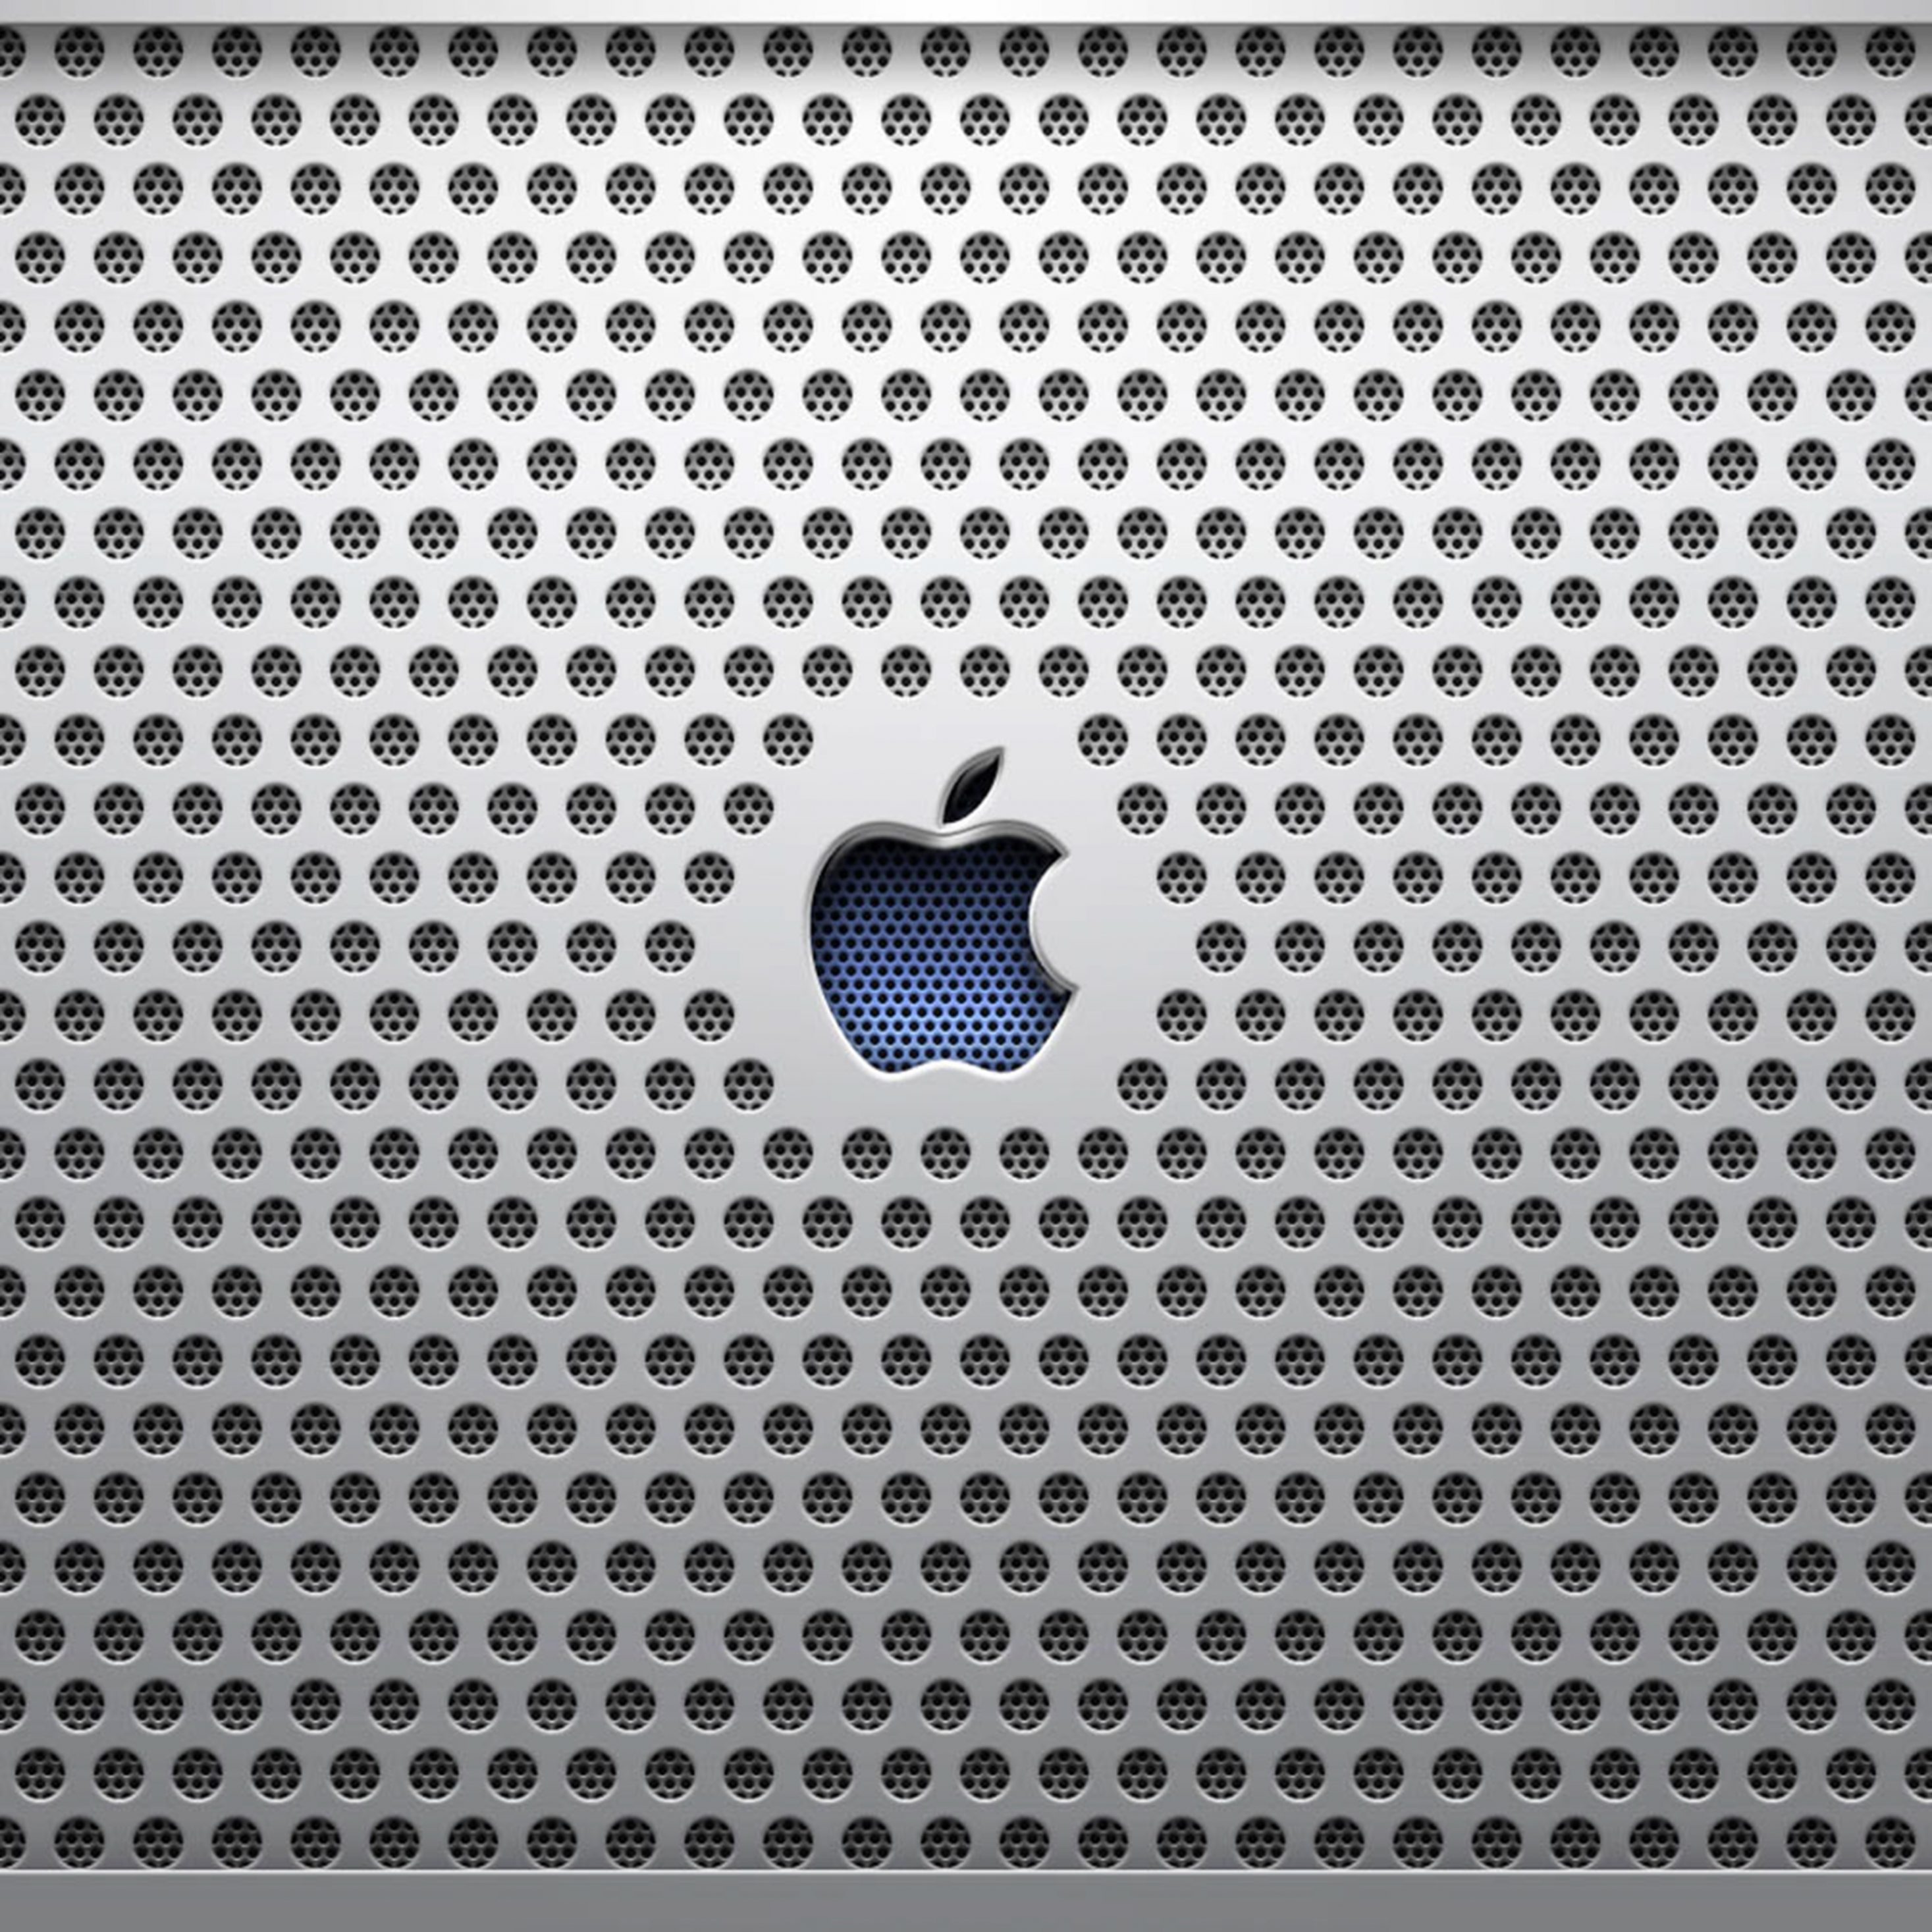 2934x2934 iOS iPad wallpaper 4k Apple Industrial Ipad Wallpaper 2934x2934 pixels resolution